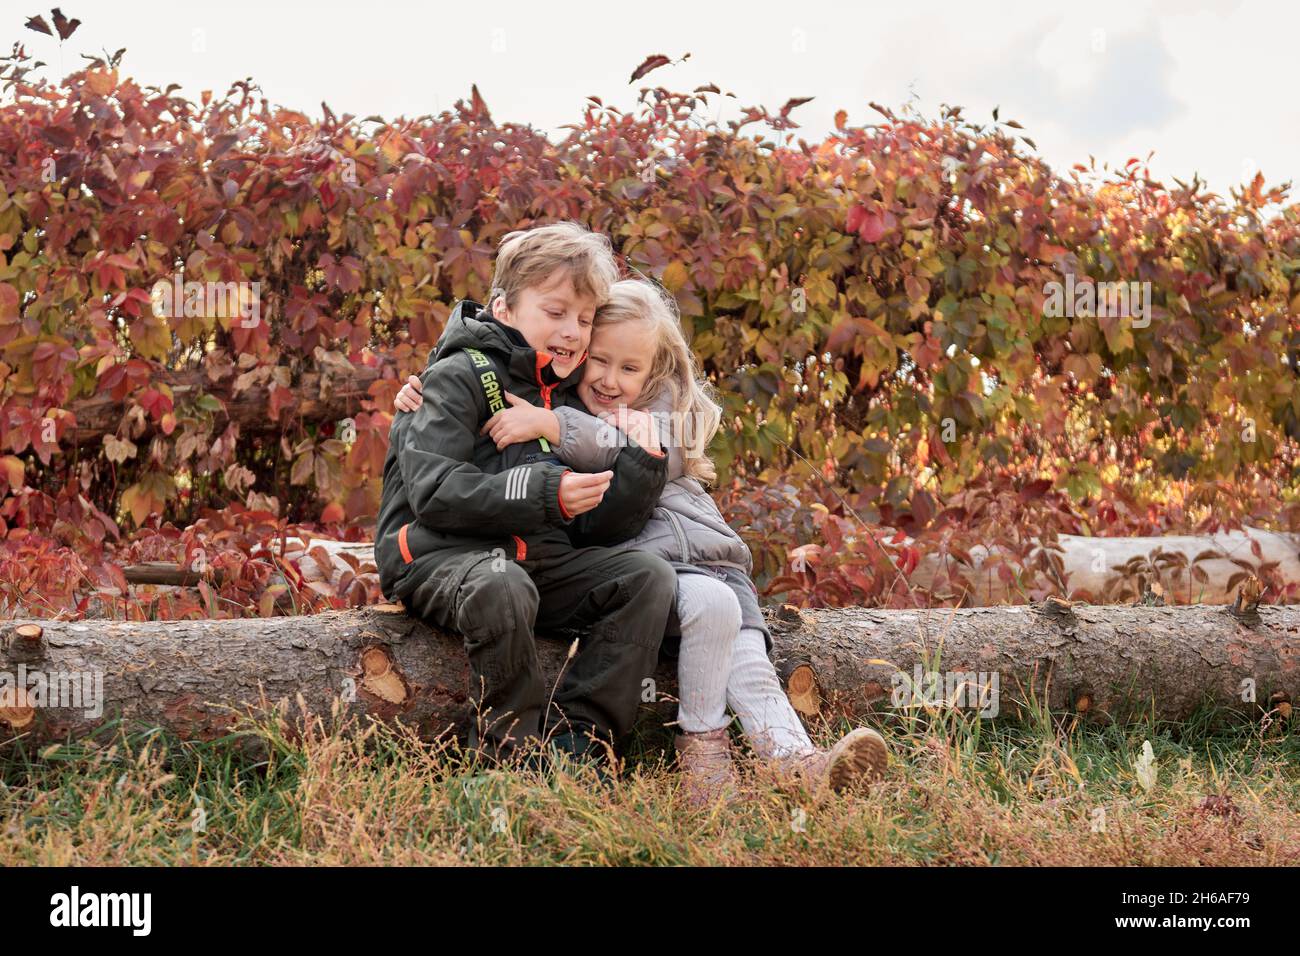 Liebende Geschwister Bruder und Schwester haben Spaß im Park mit trockenen gelben und roten Blättern. Herbstlicher Familienspaziergang. Stockfoto